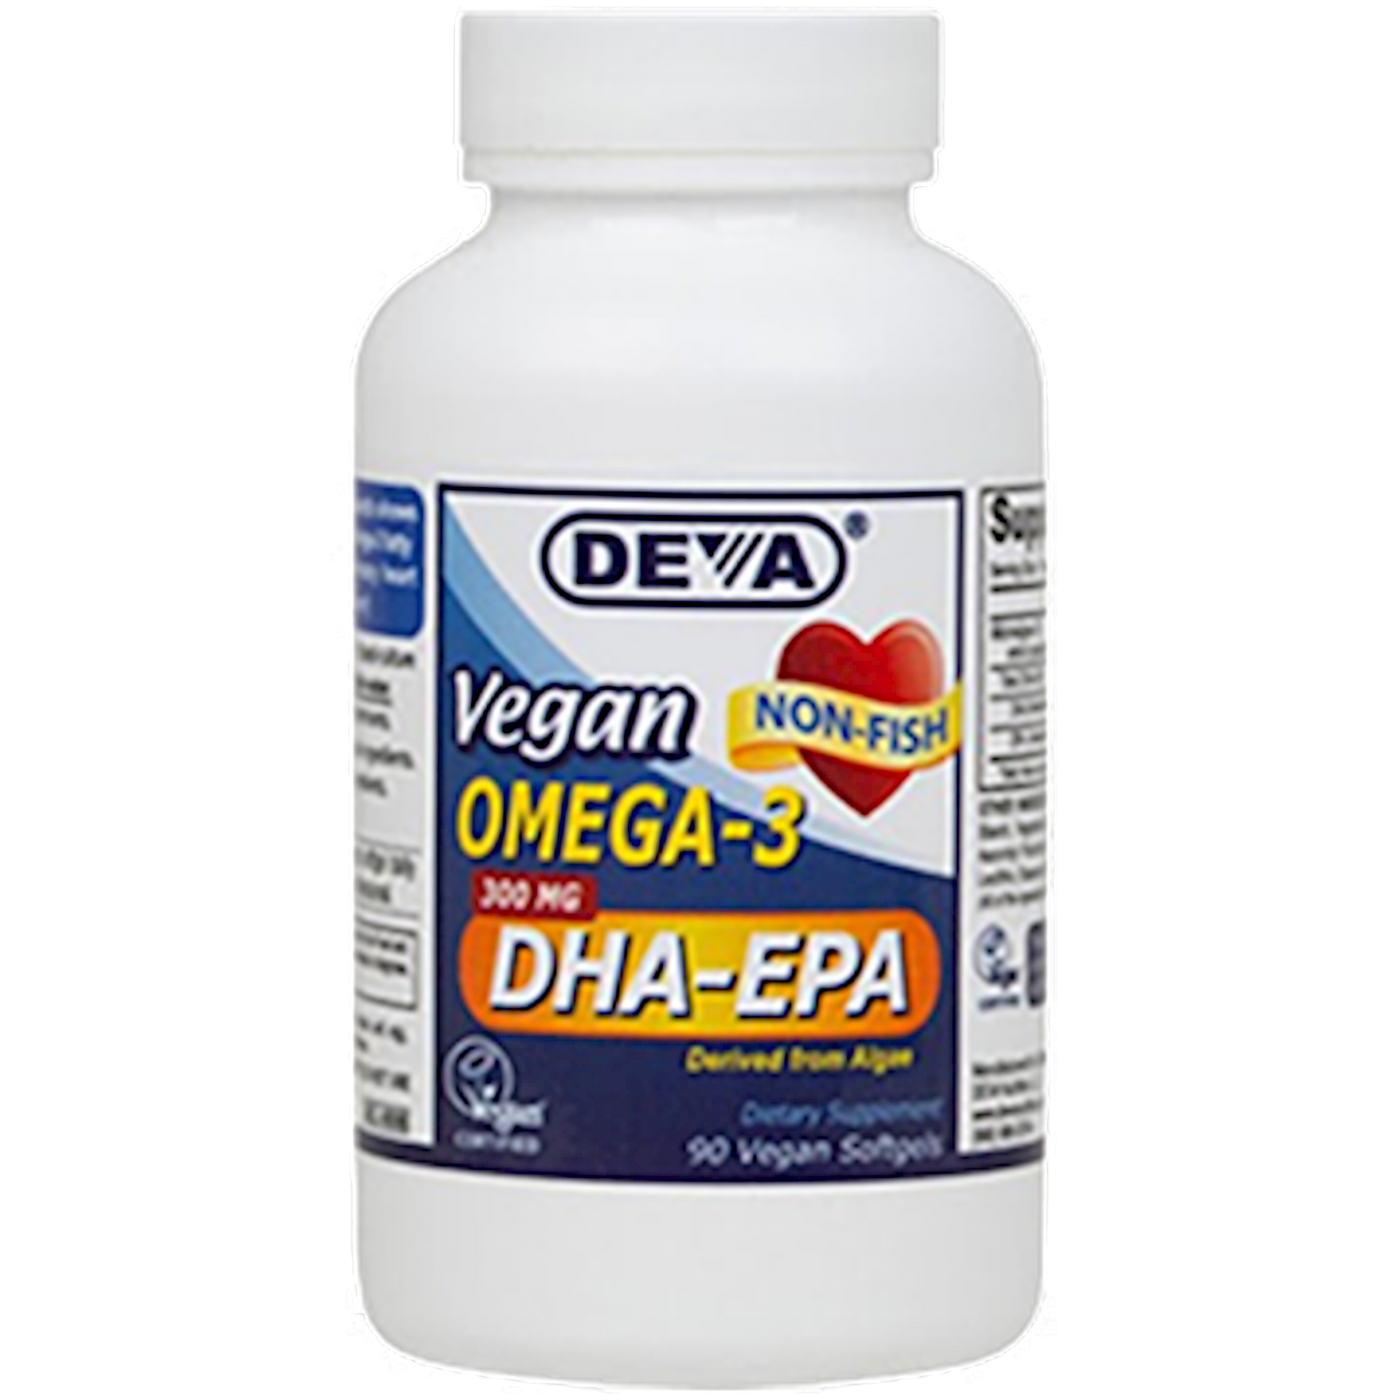 Vegan Omega-3 DHA-EPA 300mg 90 gels Curated Wellness